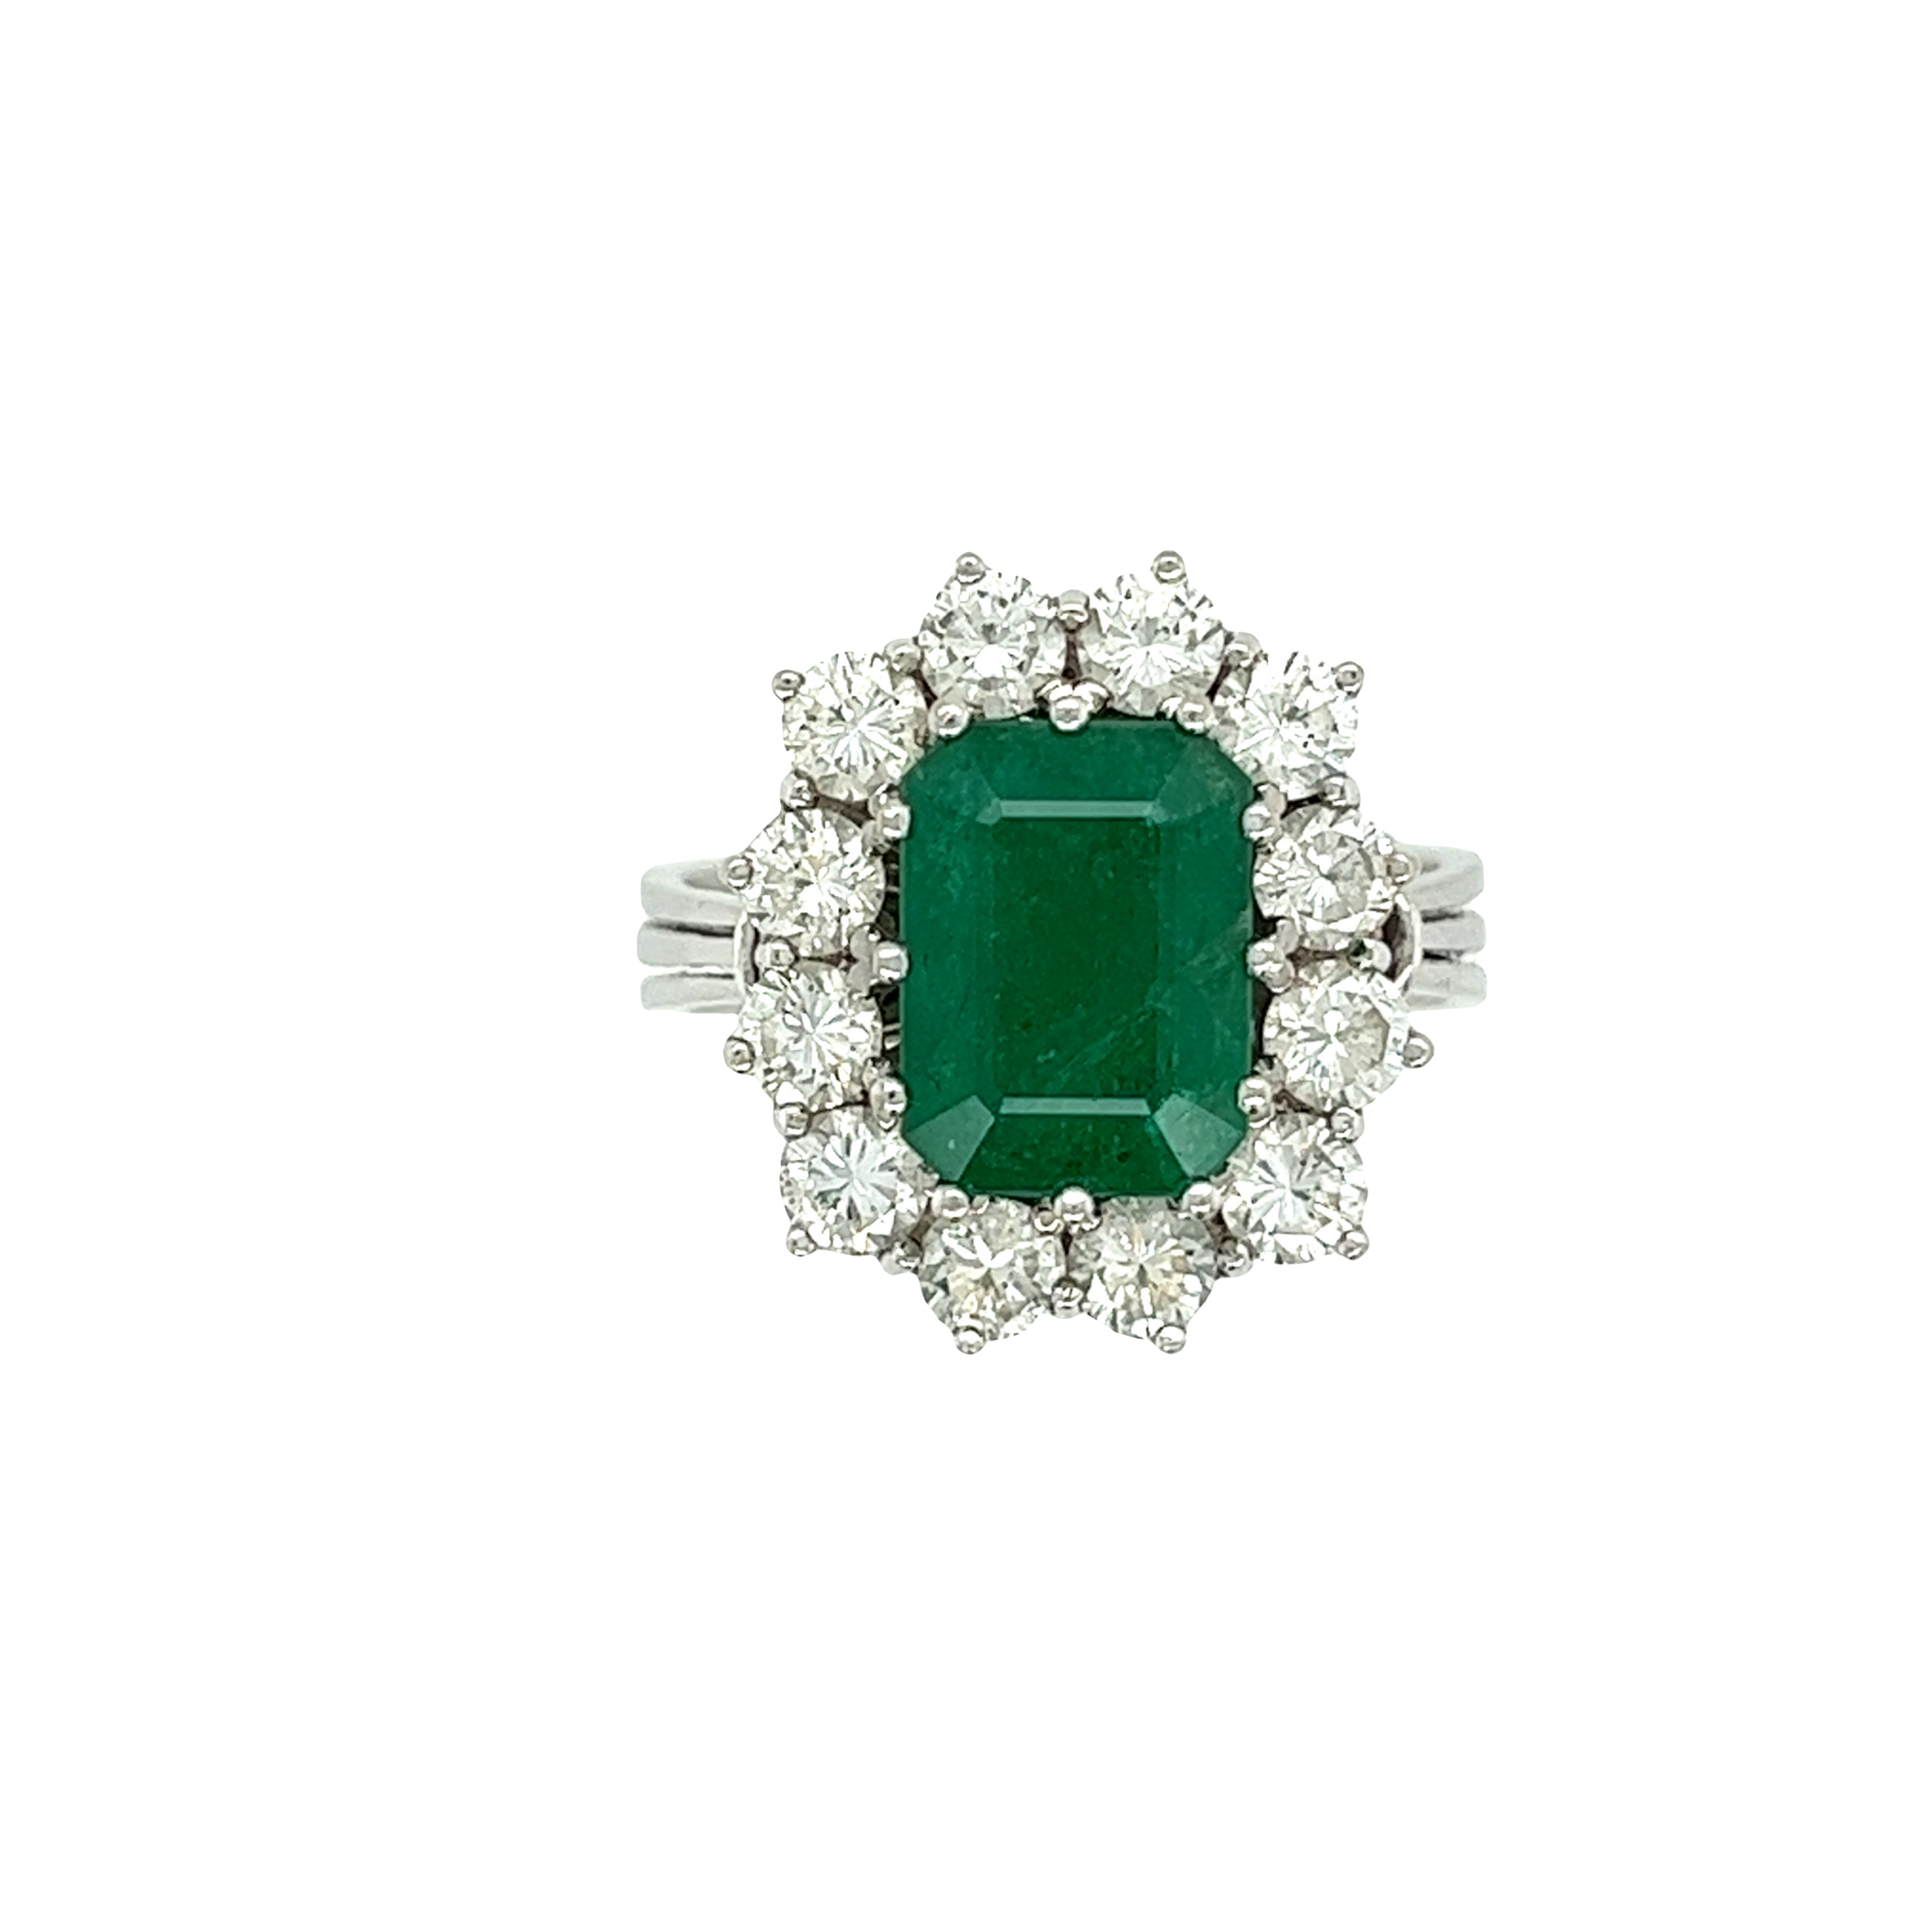 Smaragd Ring Weißgold 750 / 18K mit ins. ca. 1,2ct Diamanten